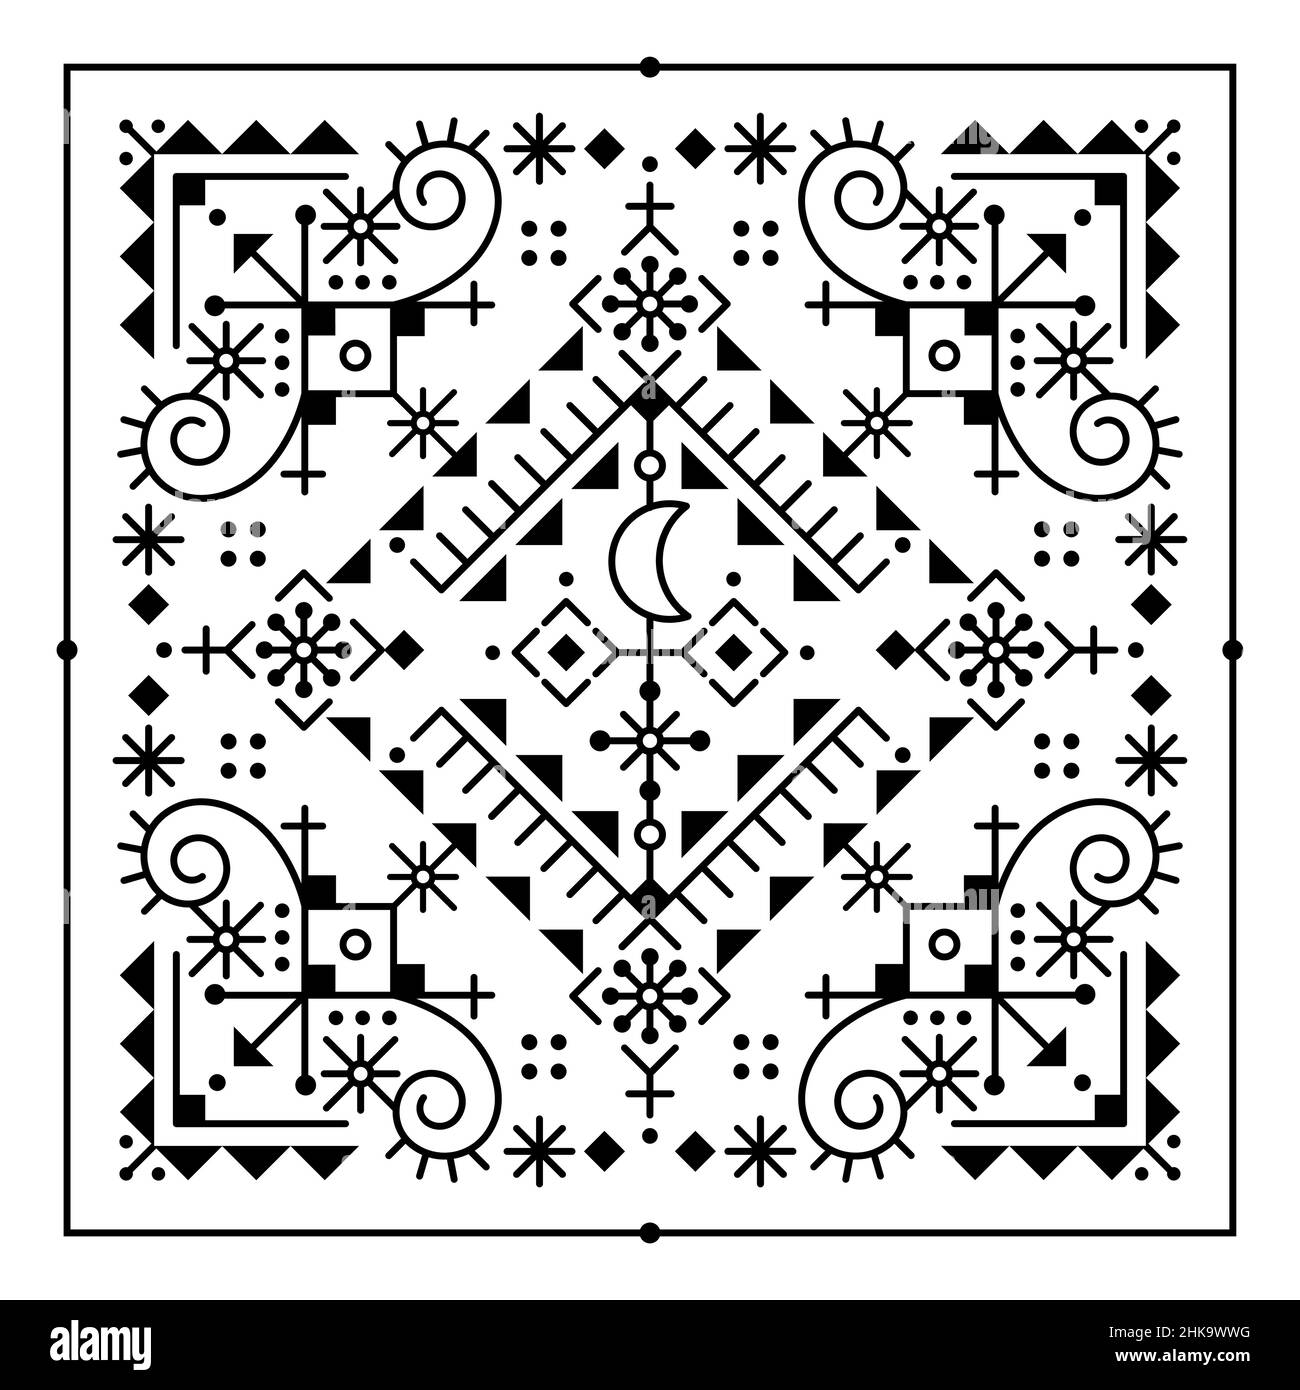 Isländisches Tribal- oder Neotribal-Linienkunst-Vektor-quadratisches Muster mit Mond, geometrischem Grußkartendesign, inspiriert von der alten nordischen Wikinger-Runenkunst Stock Vektor